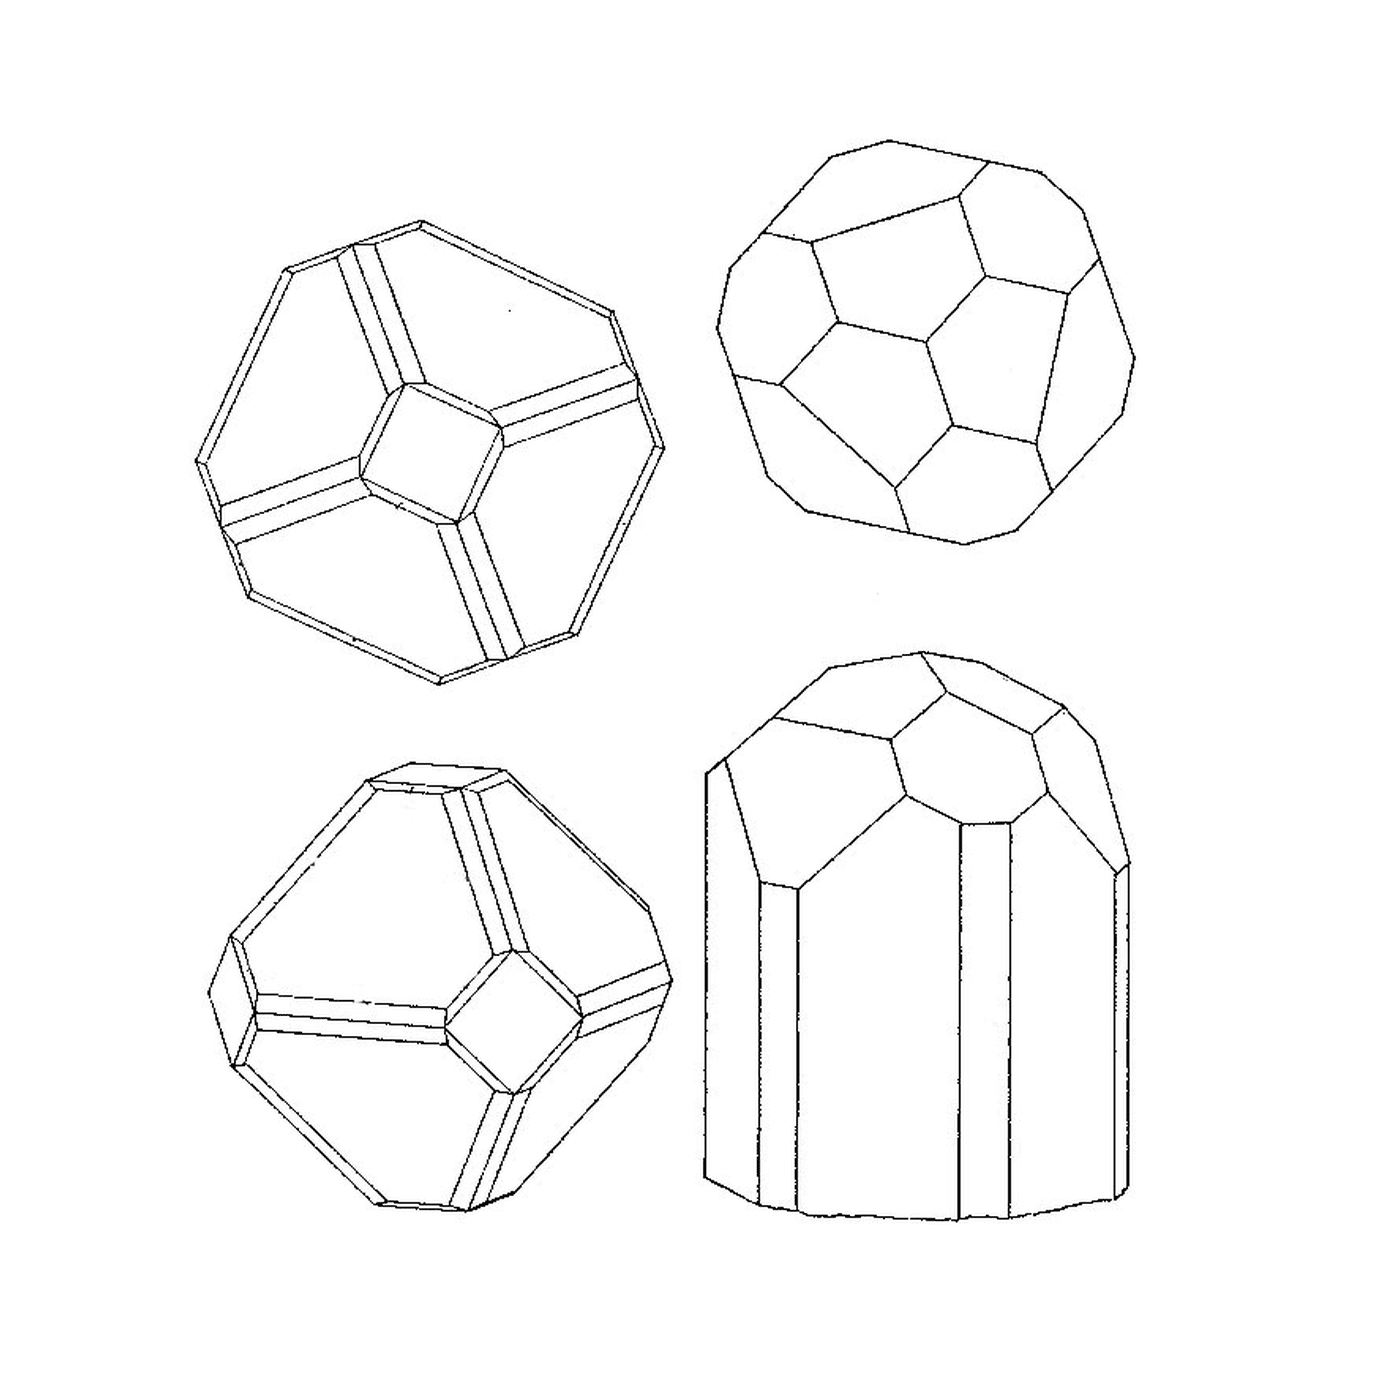  Четыре различных геометрических формы 